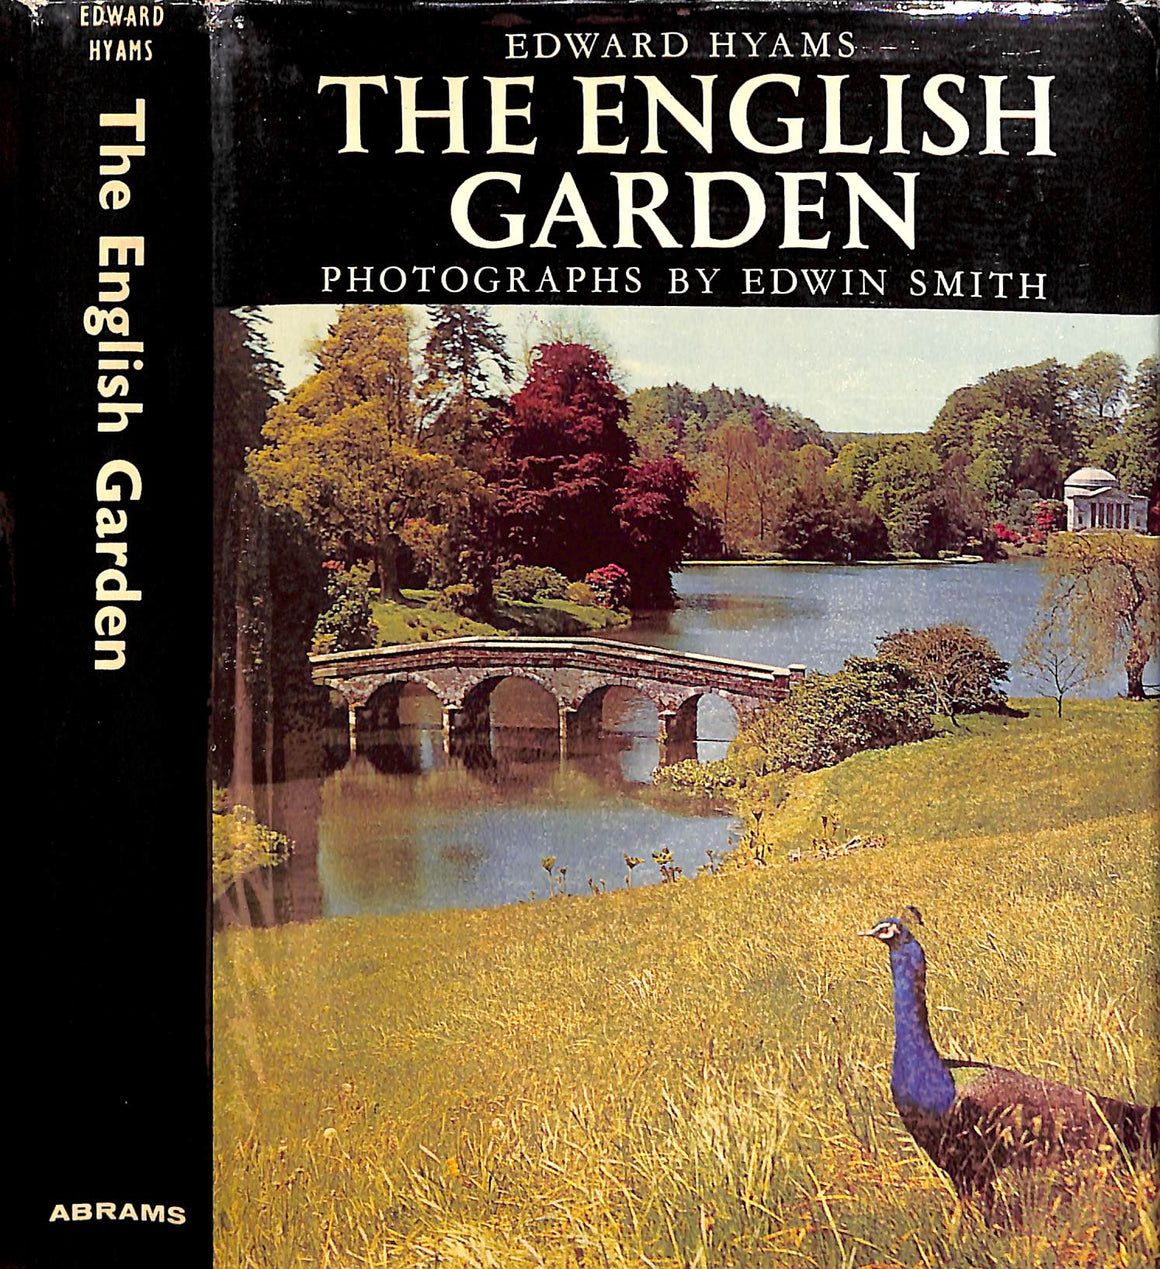 "The English Garden" 1966 HYAMS, Edward